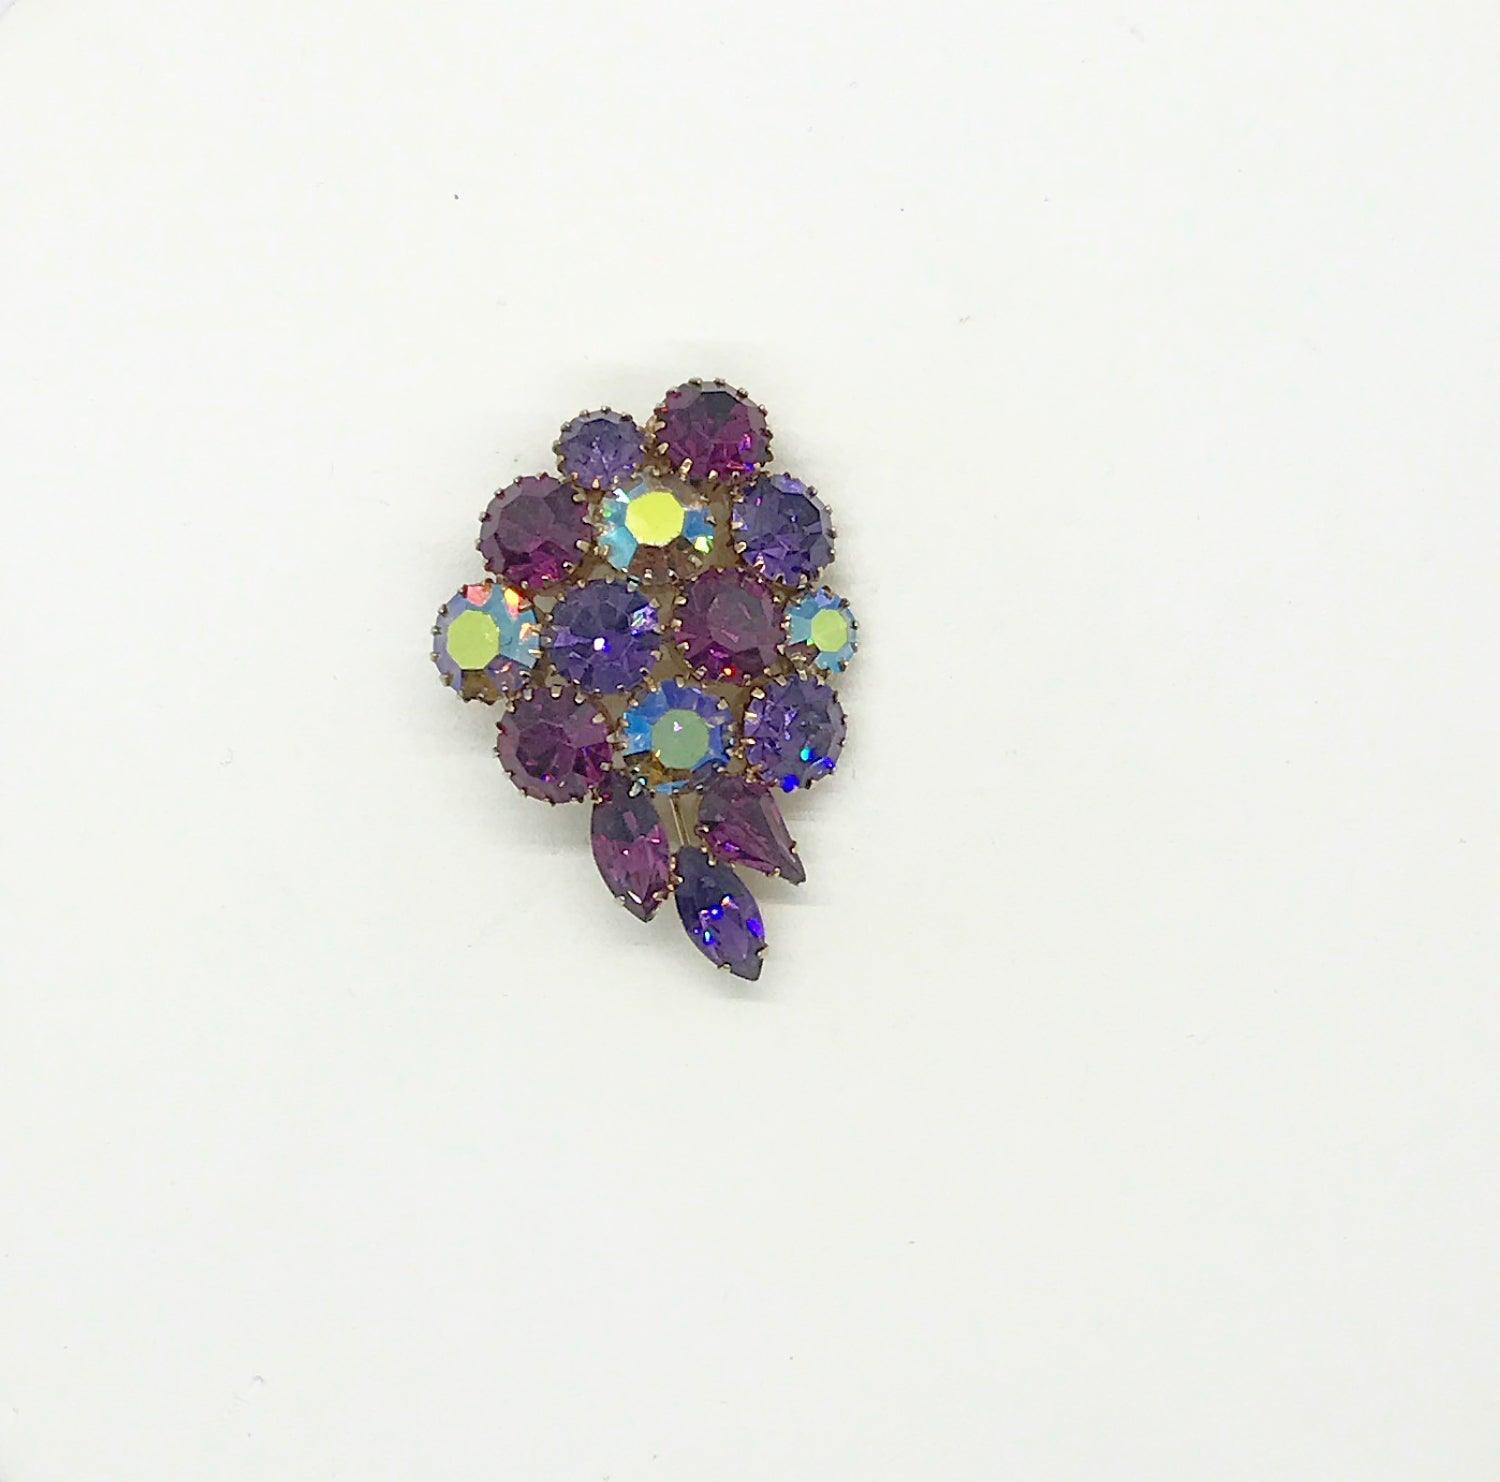 Vintage Purple Brooch with Sparkling Stones - Lamoree’s Vintage